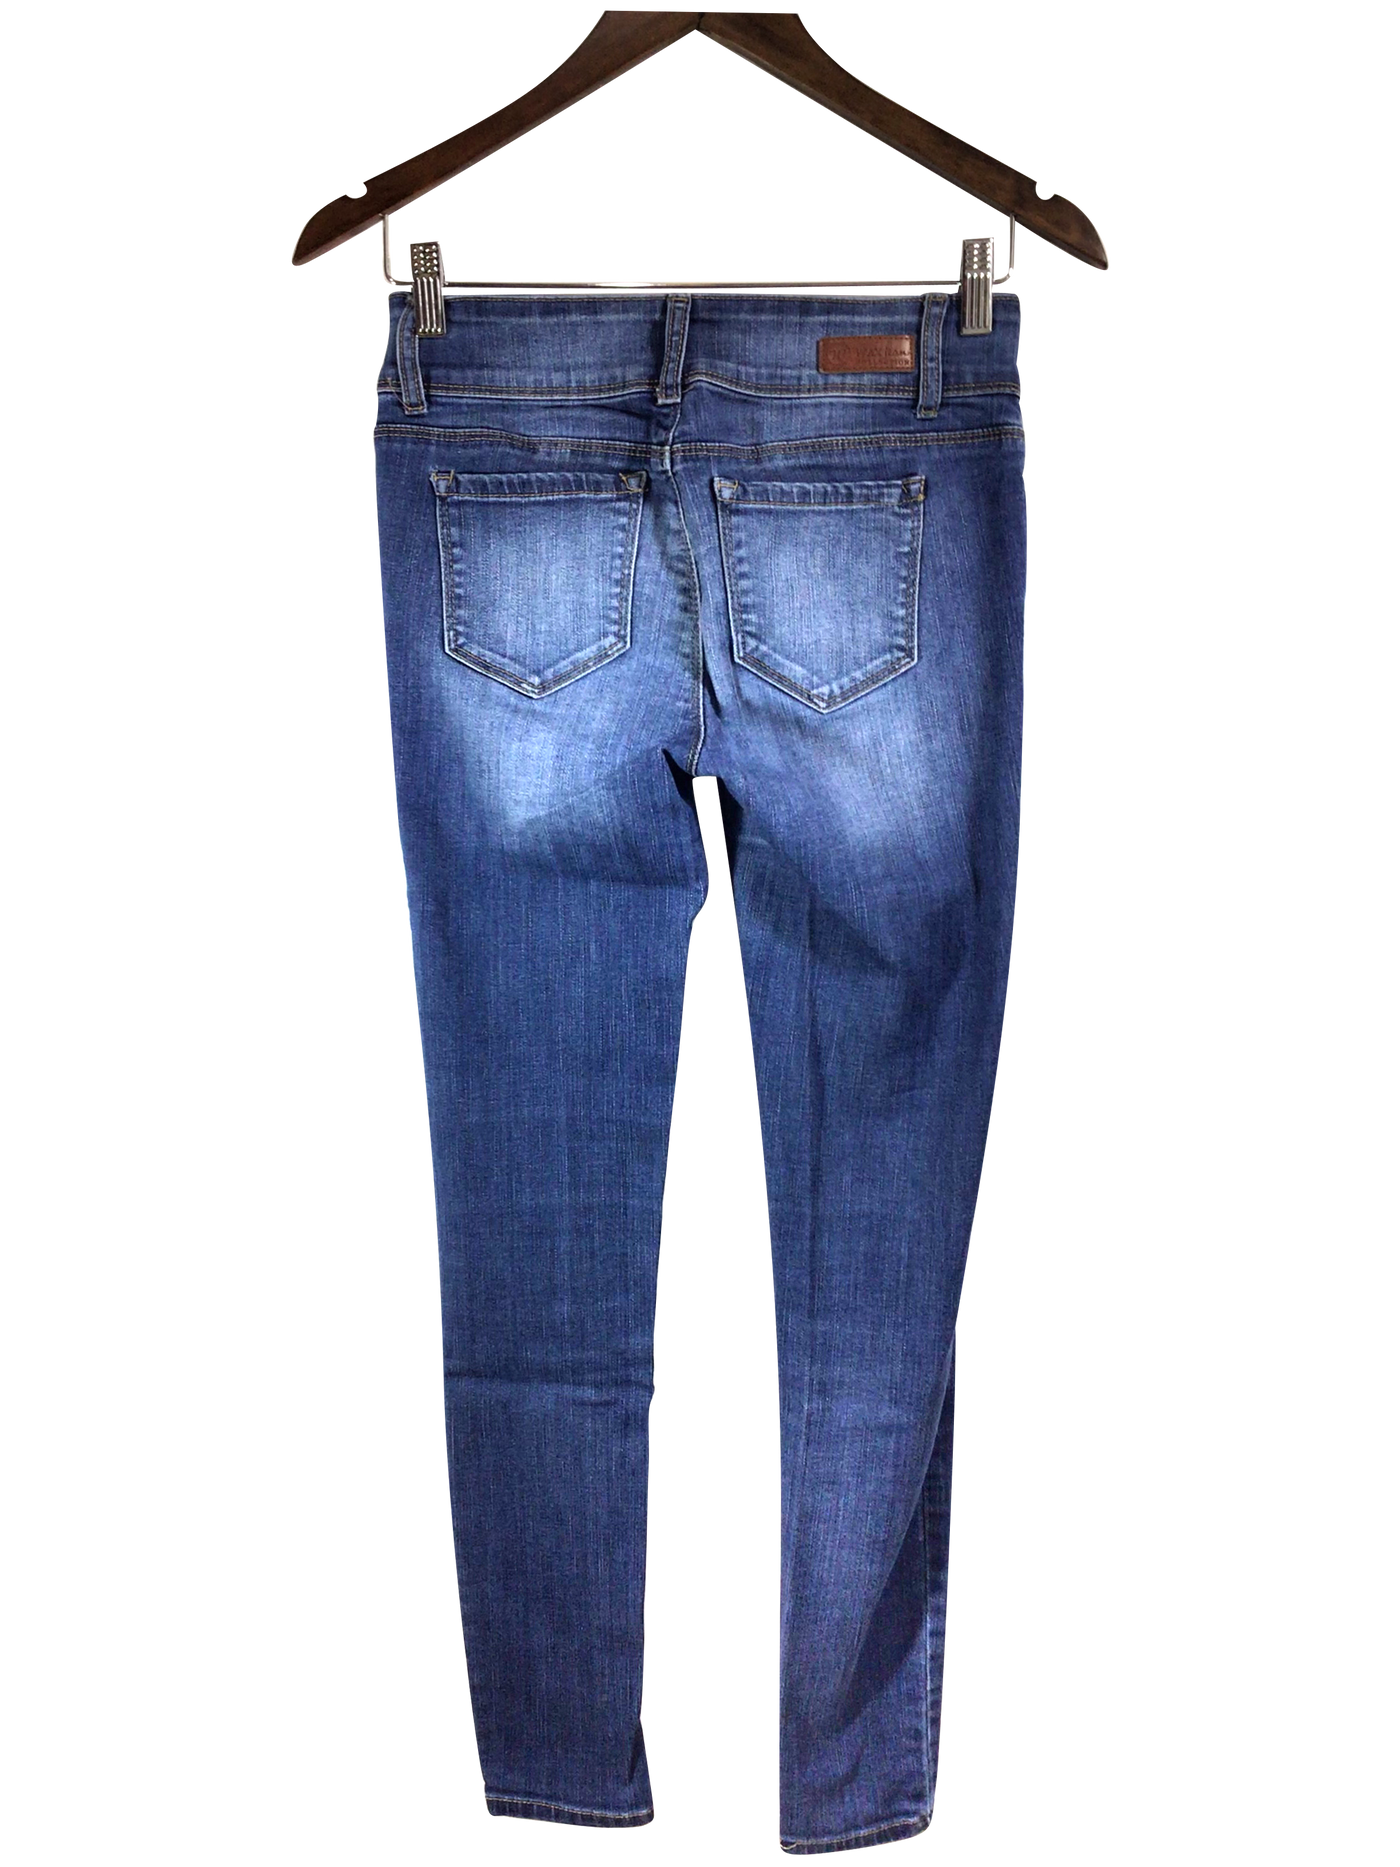 WAX JEANS Women Straight-Legged Jeans Regular fit in Blue - Size 3 | 22.99 $ KOOP